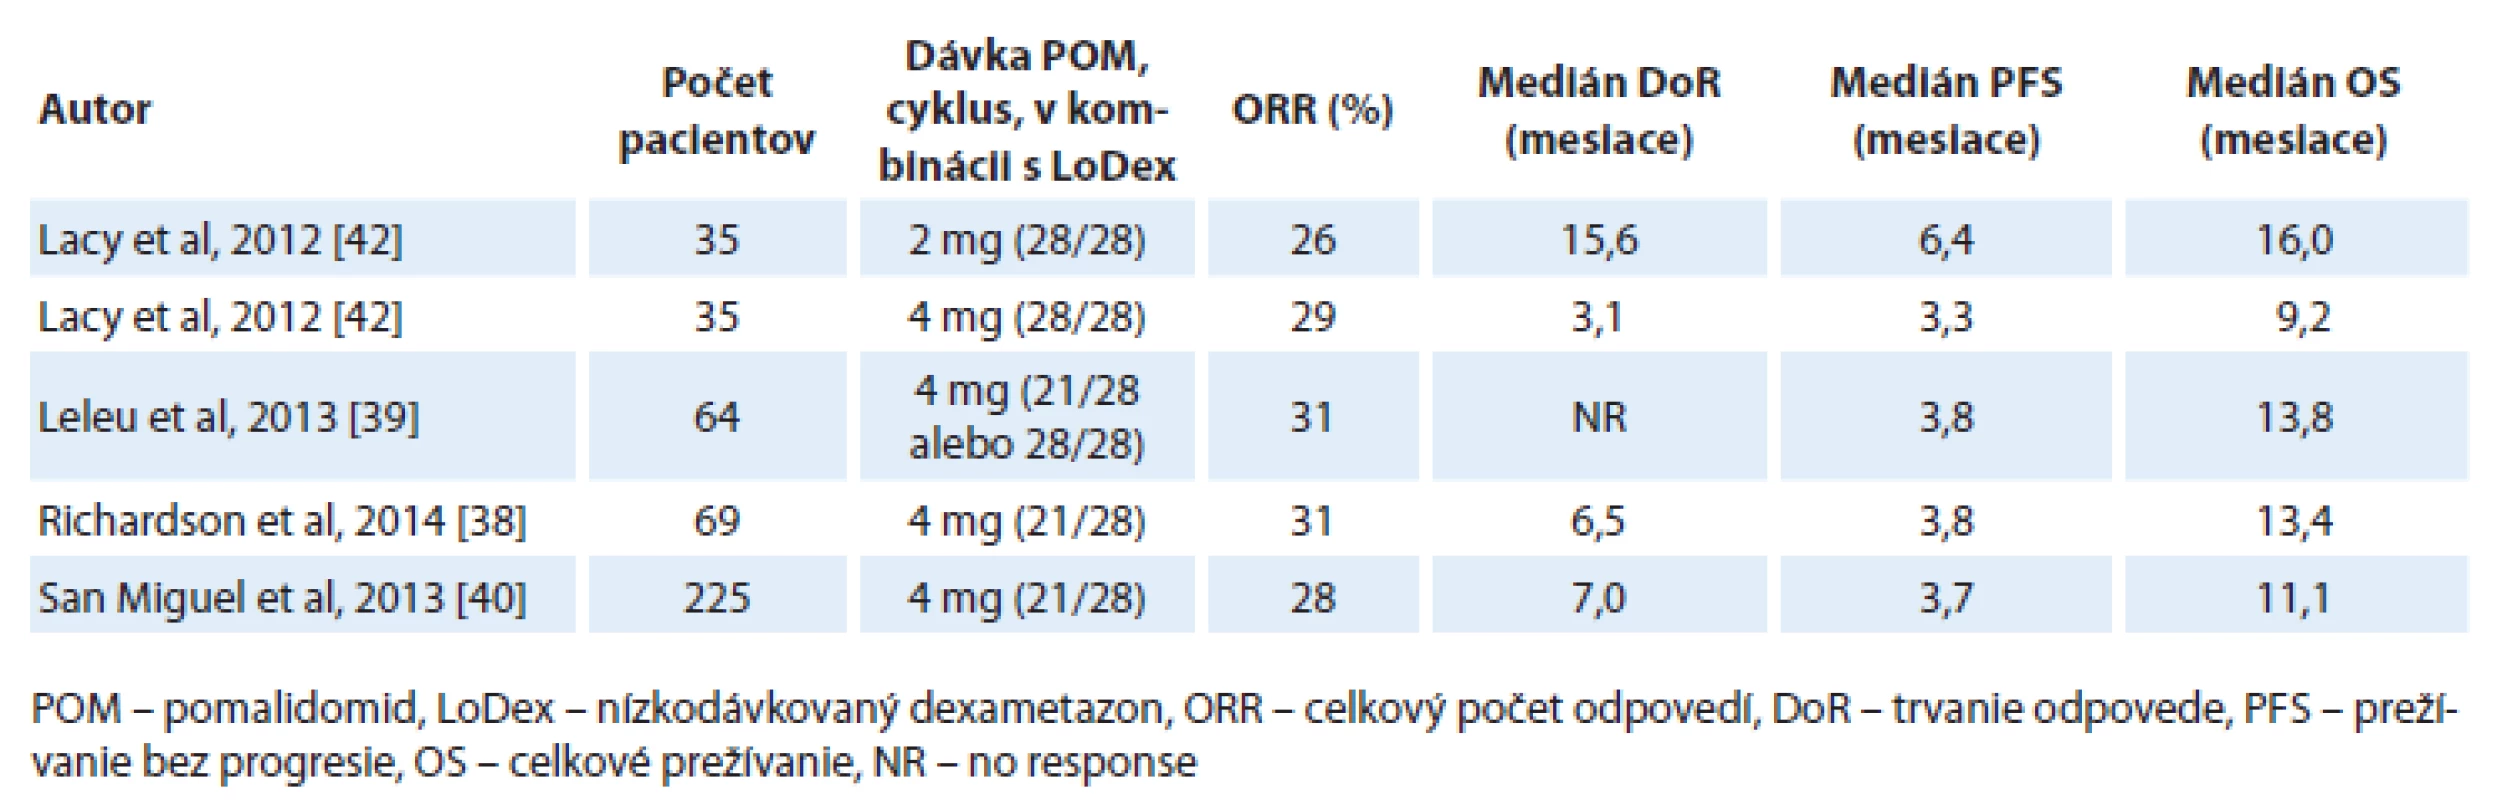 Účinnosť pomalidomidu v kombinácii s nízkodávkovaným dexametazonom u dvojito refraktérnych pacientov (bortezomib aj lenalidomid).